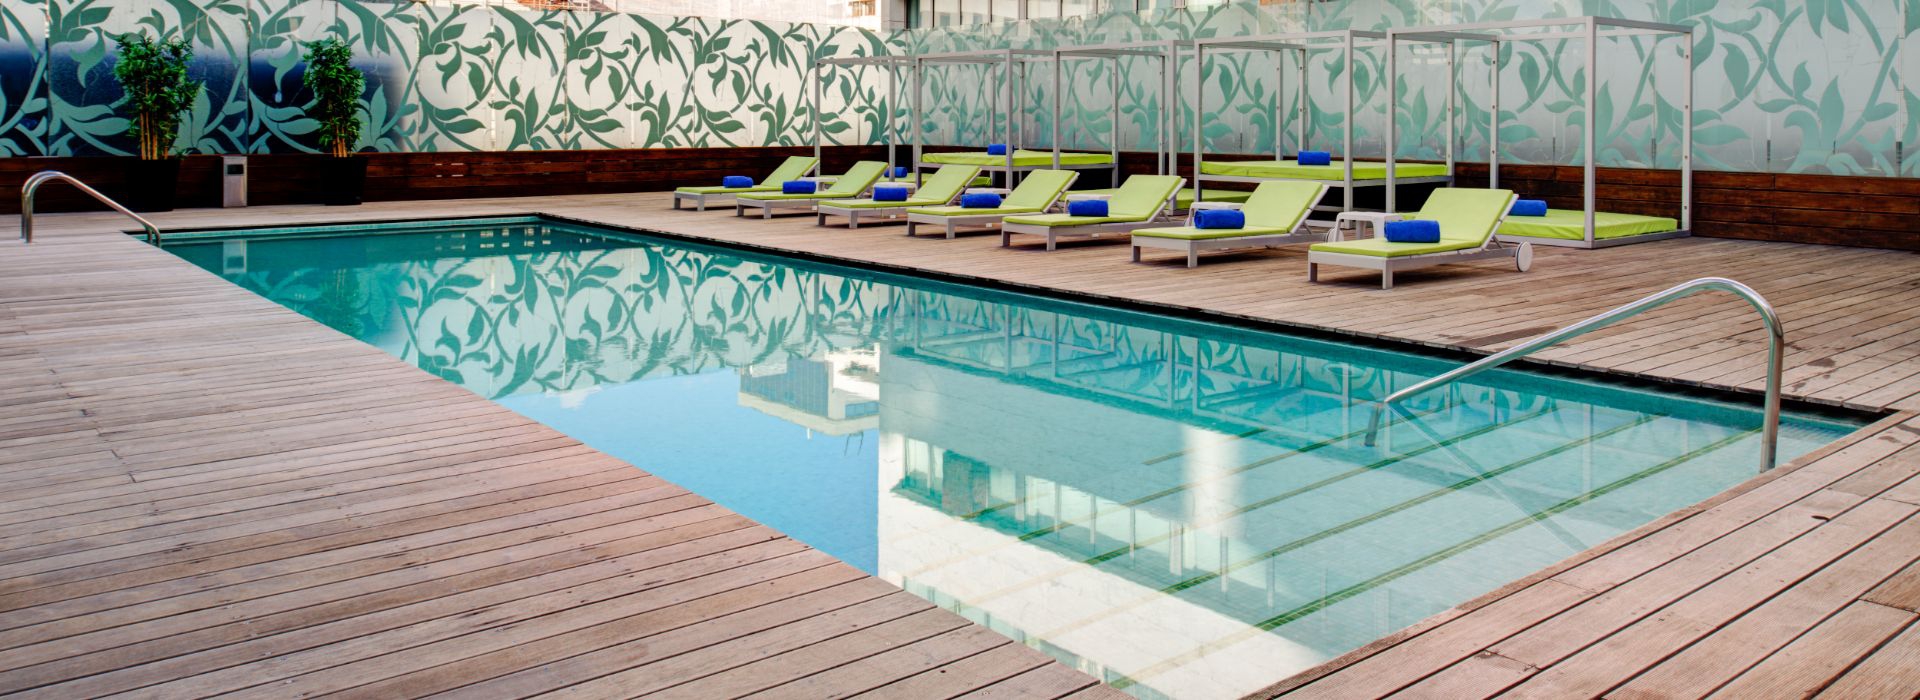 Utilize esta oportunidade para descansar e relaxar VIP Grand Lisboa Hotel & Spa